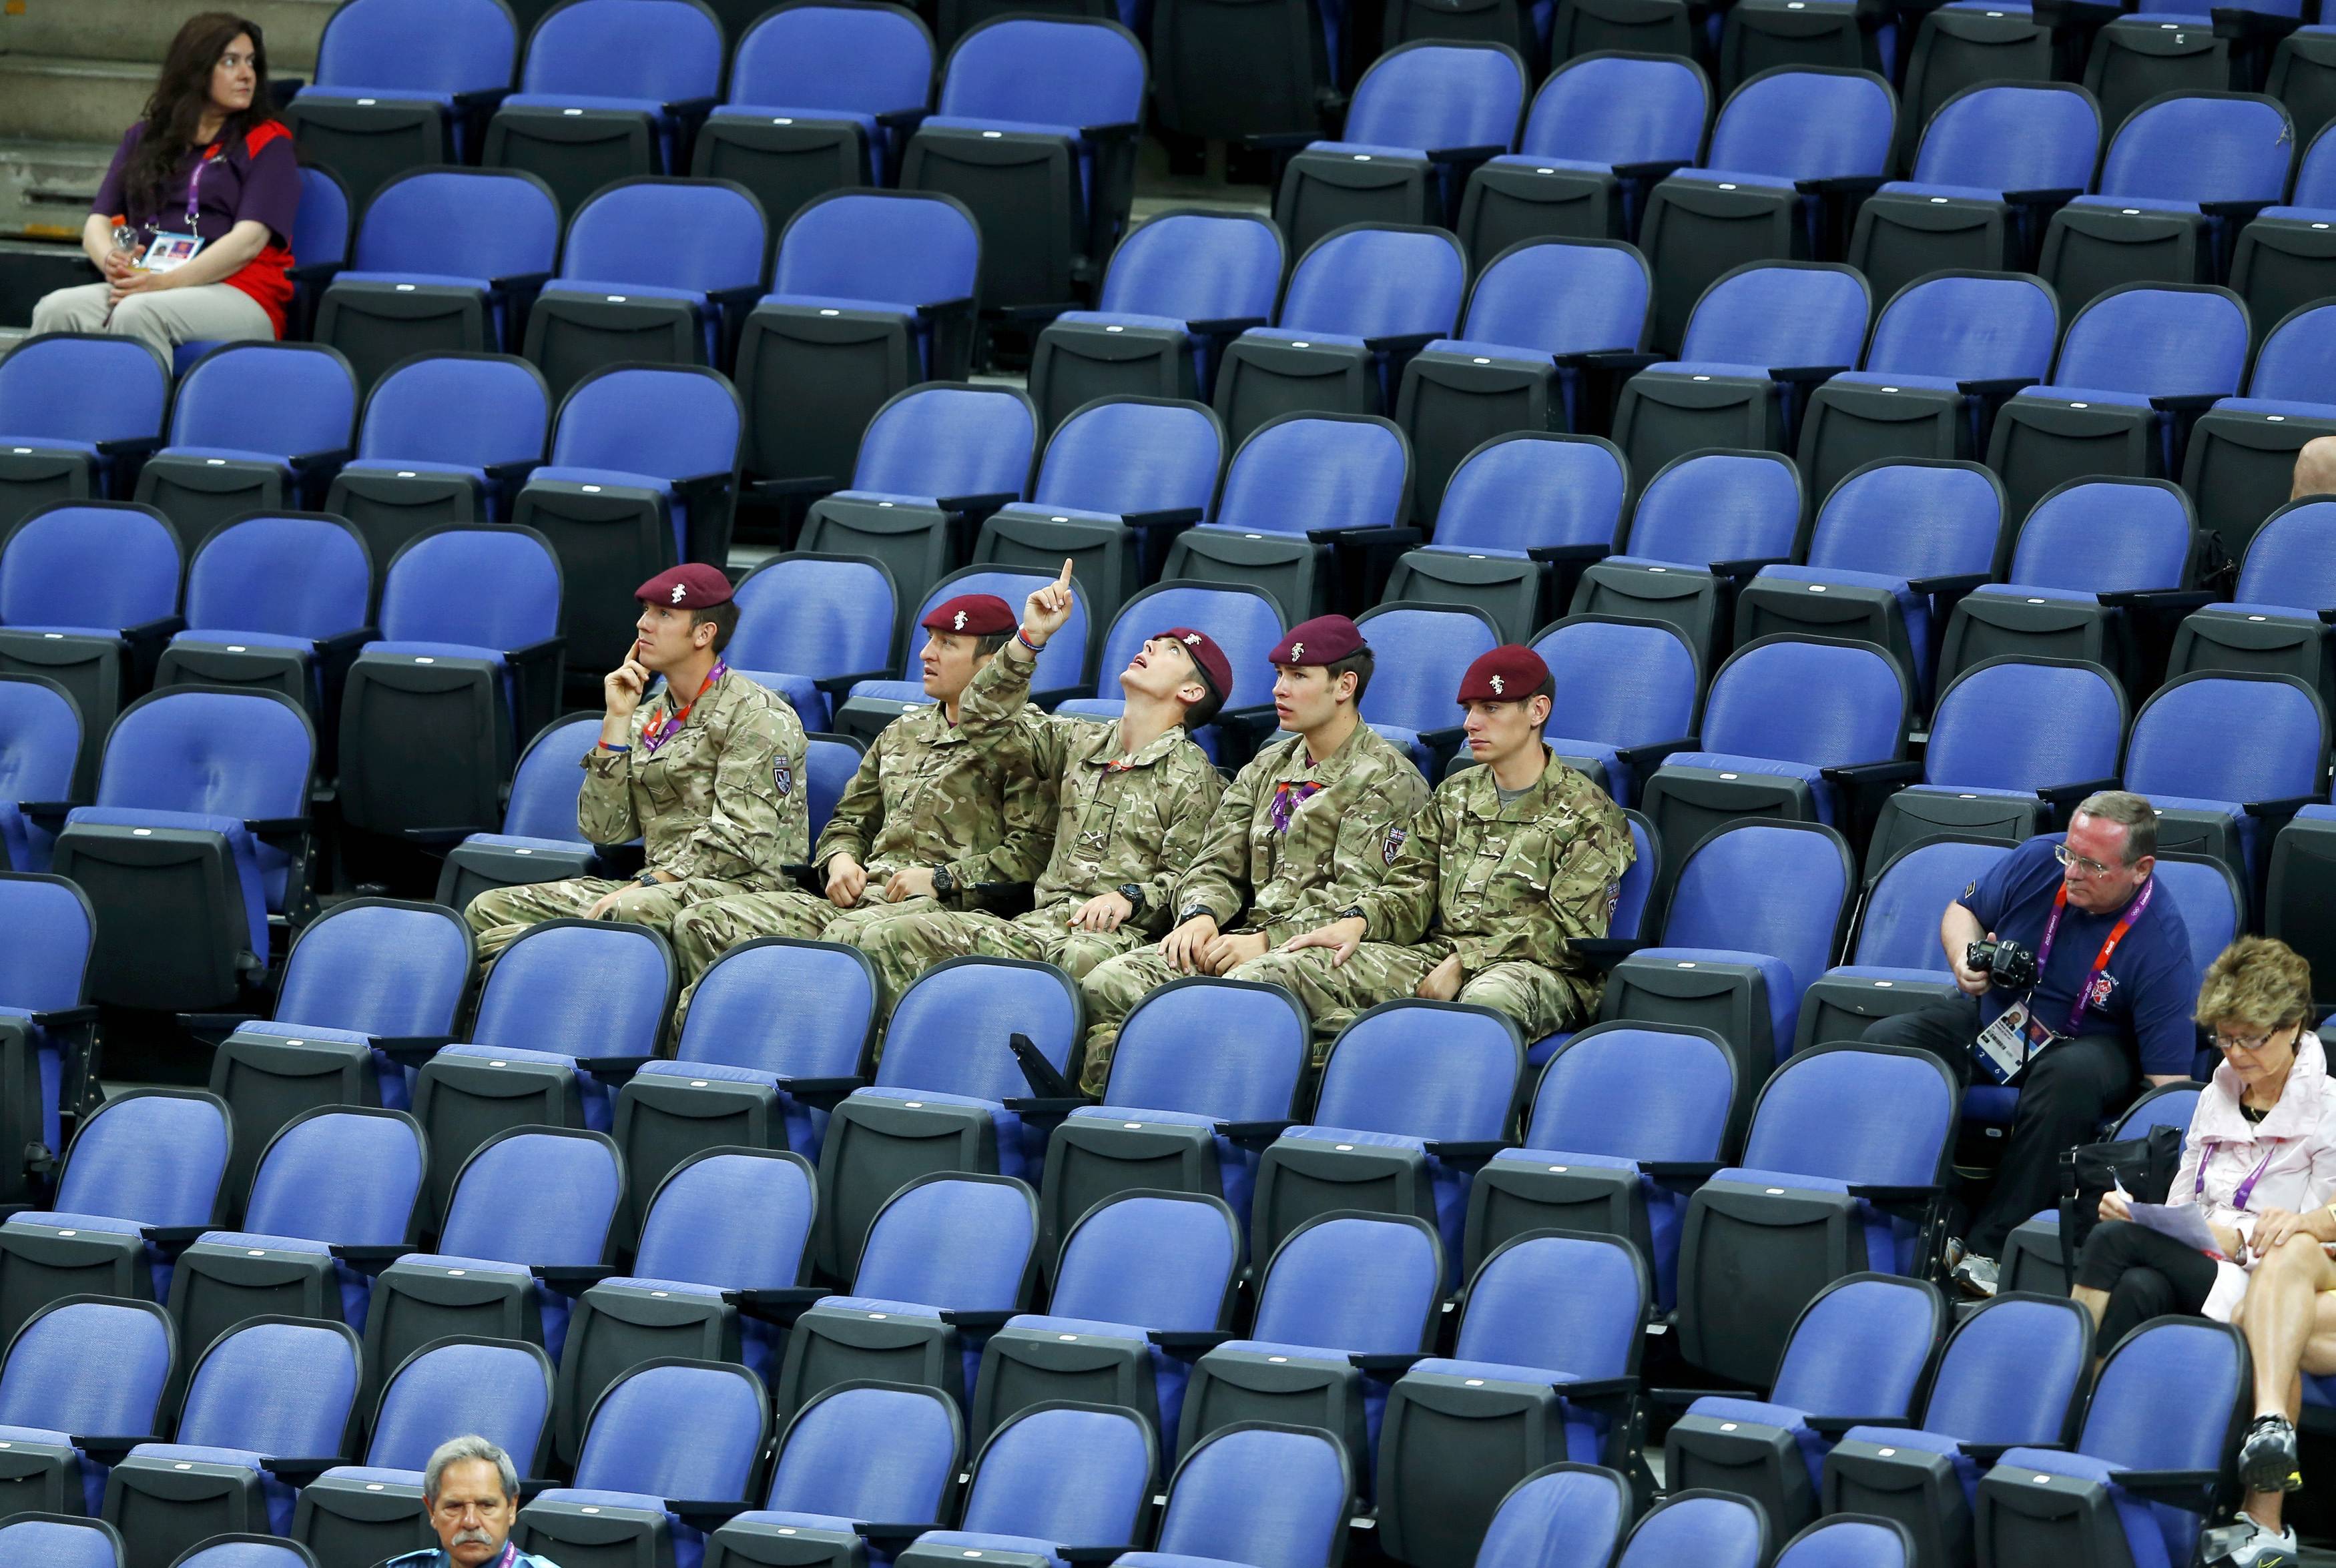 Μέχρι και στρατιώτες βάζουν στα άδεια καθίσματα όμως δεν λένε να γεμίσουν τα στάδια. ΦΩΤΟ REUTERS